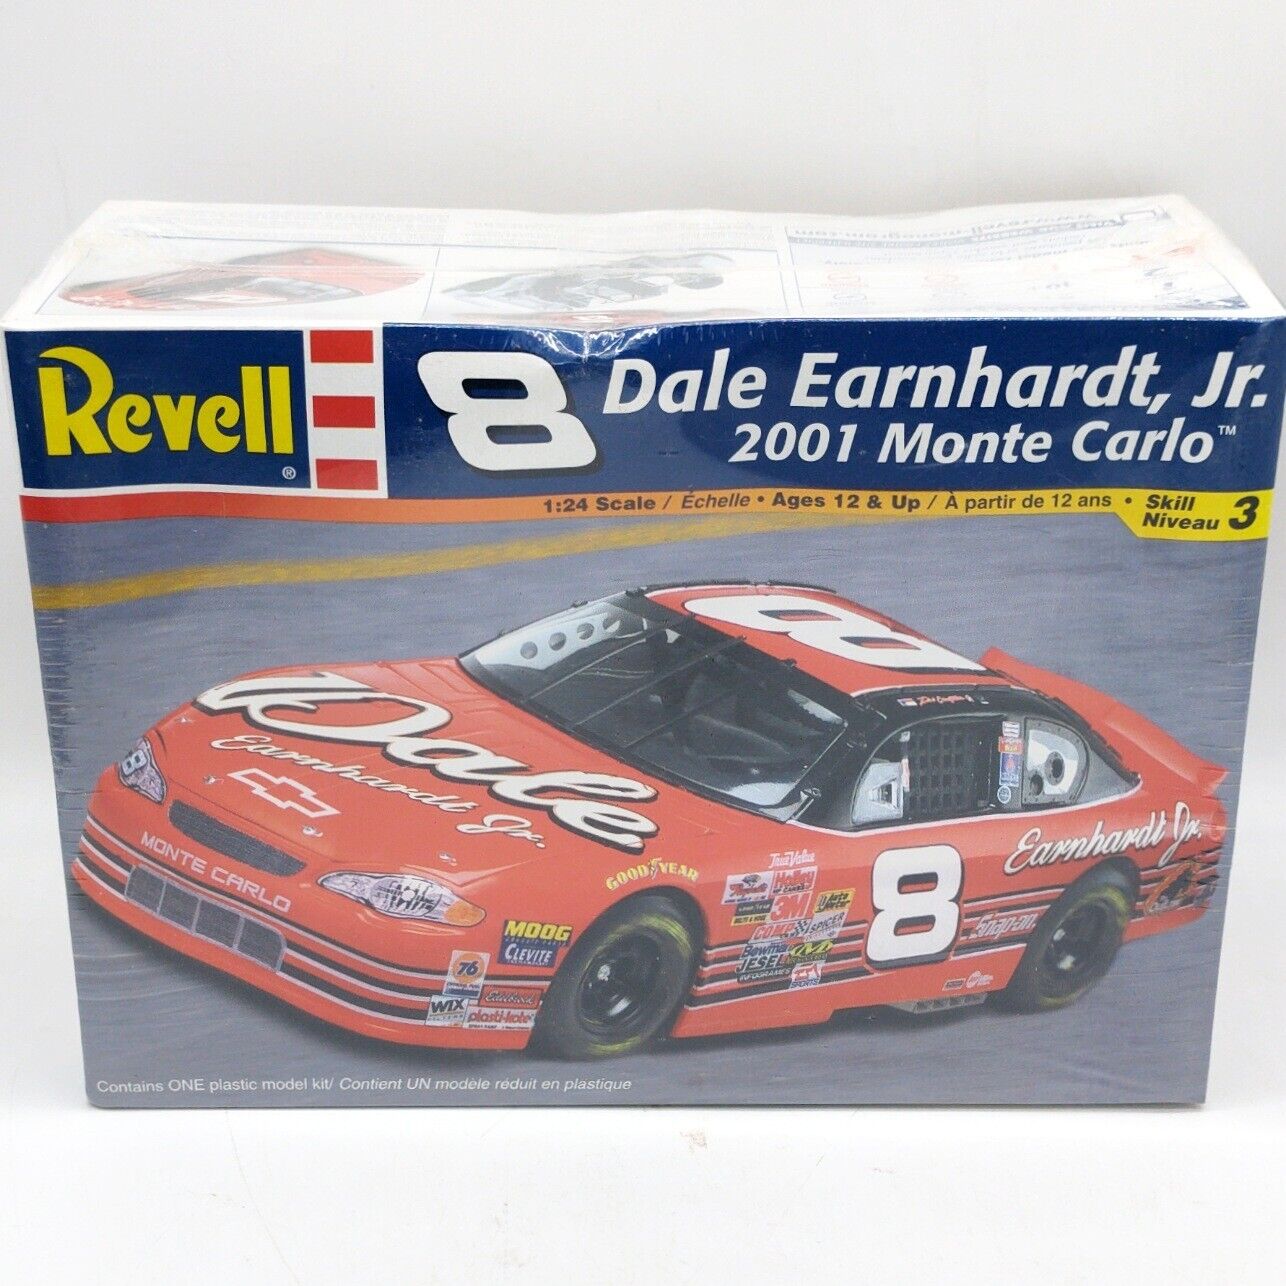 Revell #8 Dale Earnhardt, Jr. 2001 Monte Carlo 1:24 scale model kit